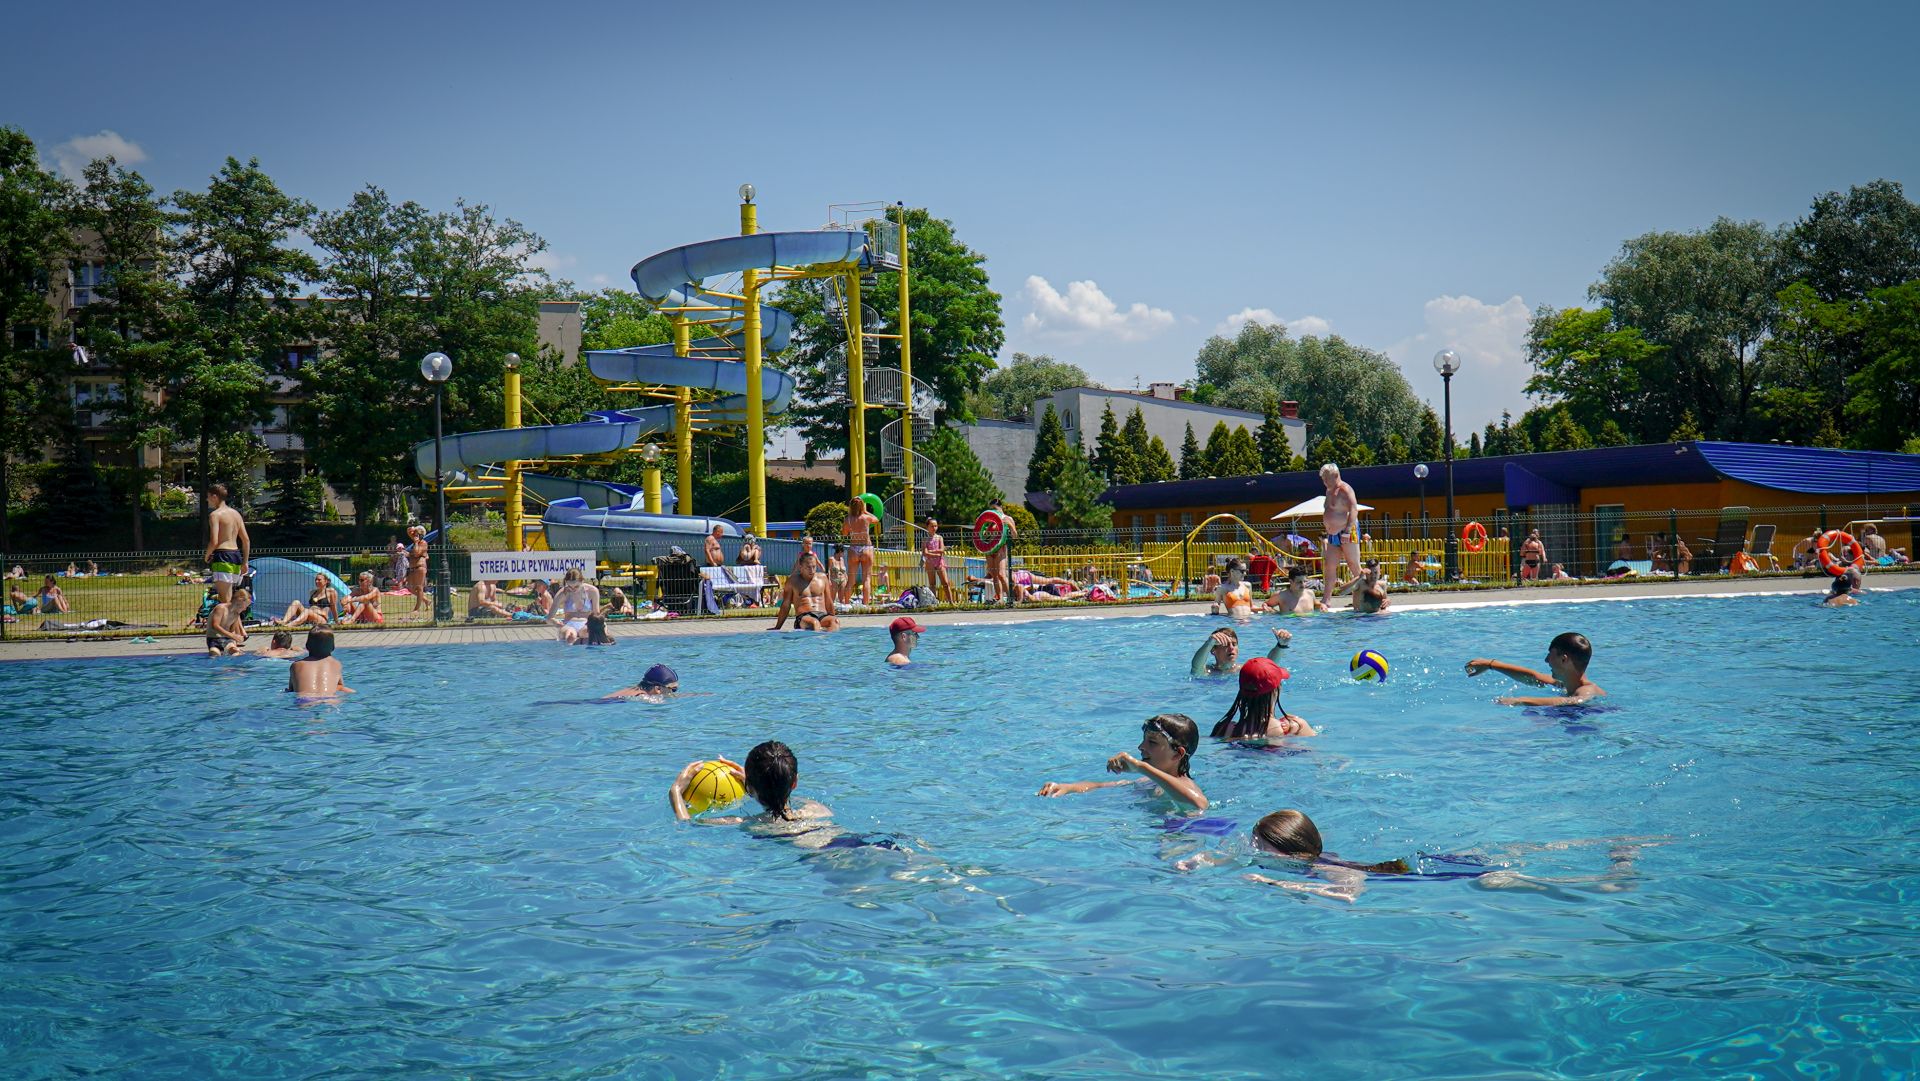 Fot. Grzegorz Bargieła/WKATOWICACH.eu. W ciepłe dni mieszkańcy chętnie pływają w basenie ORW Rolna